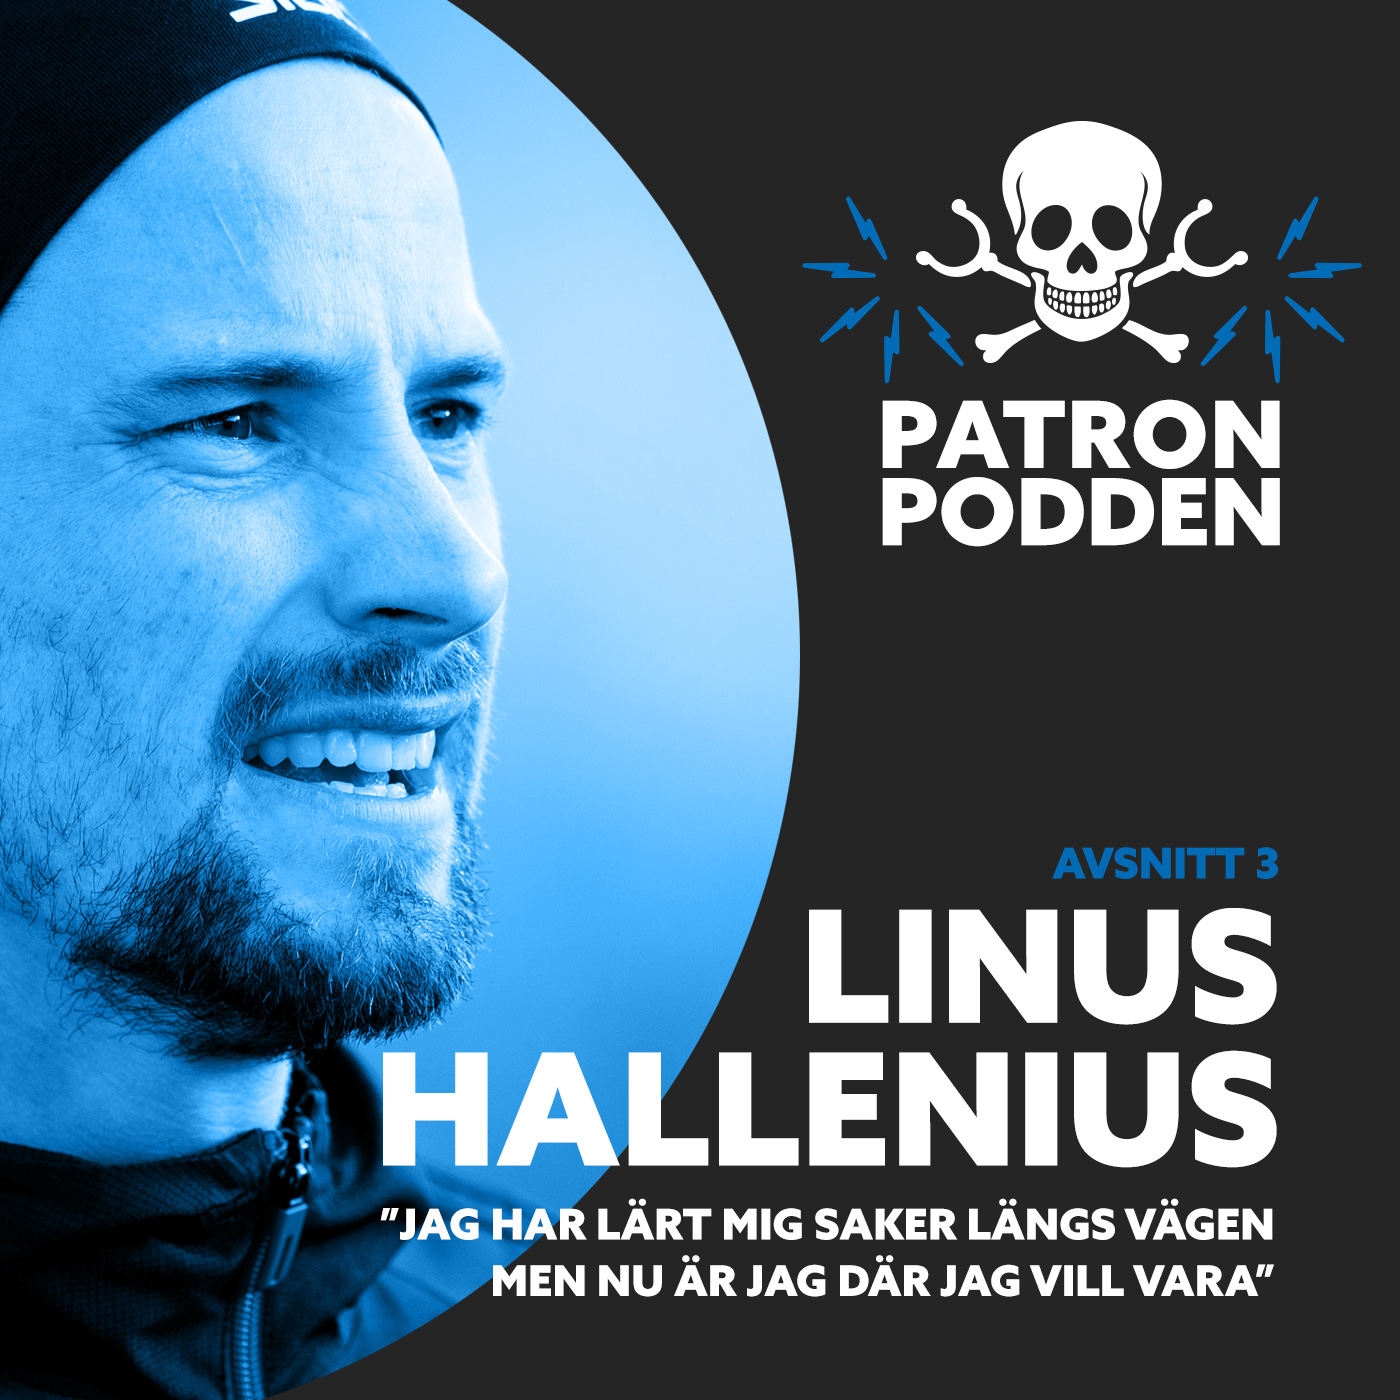 Avsnitt 3 - Linus Hallenius